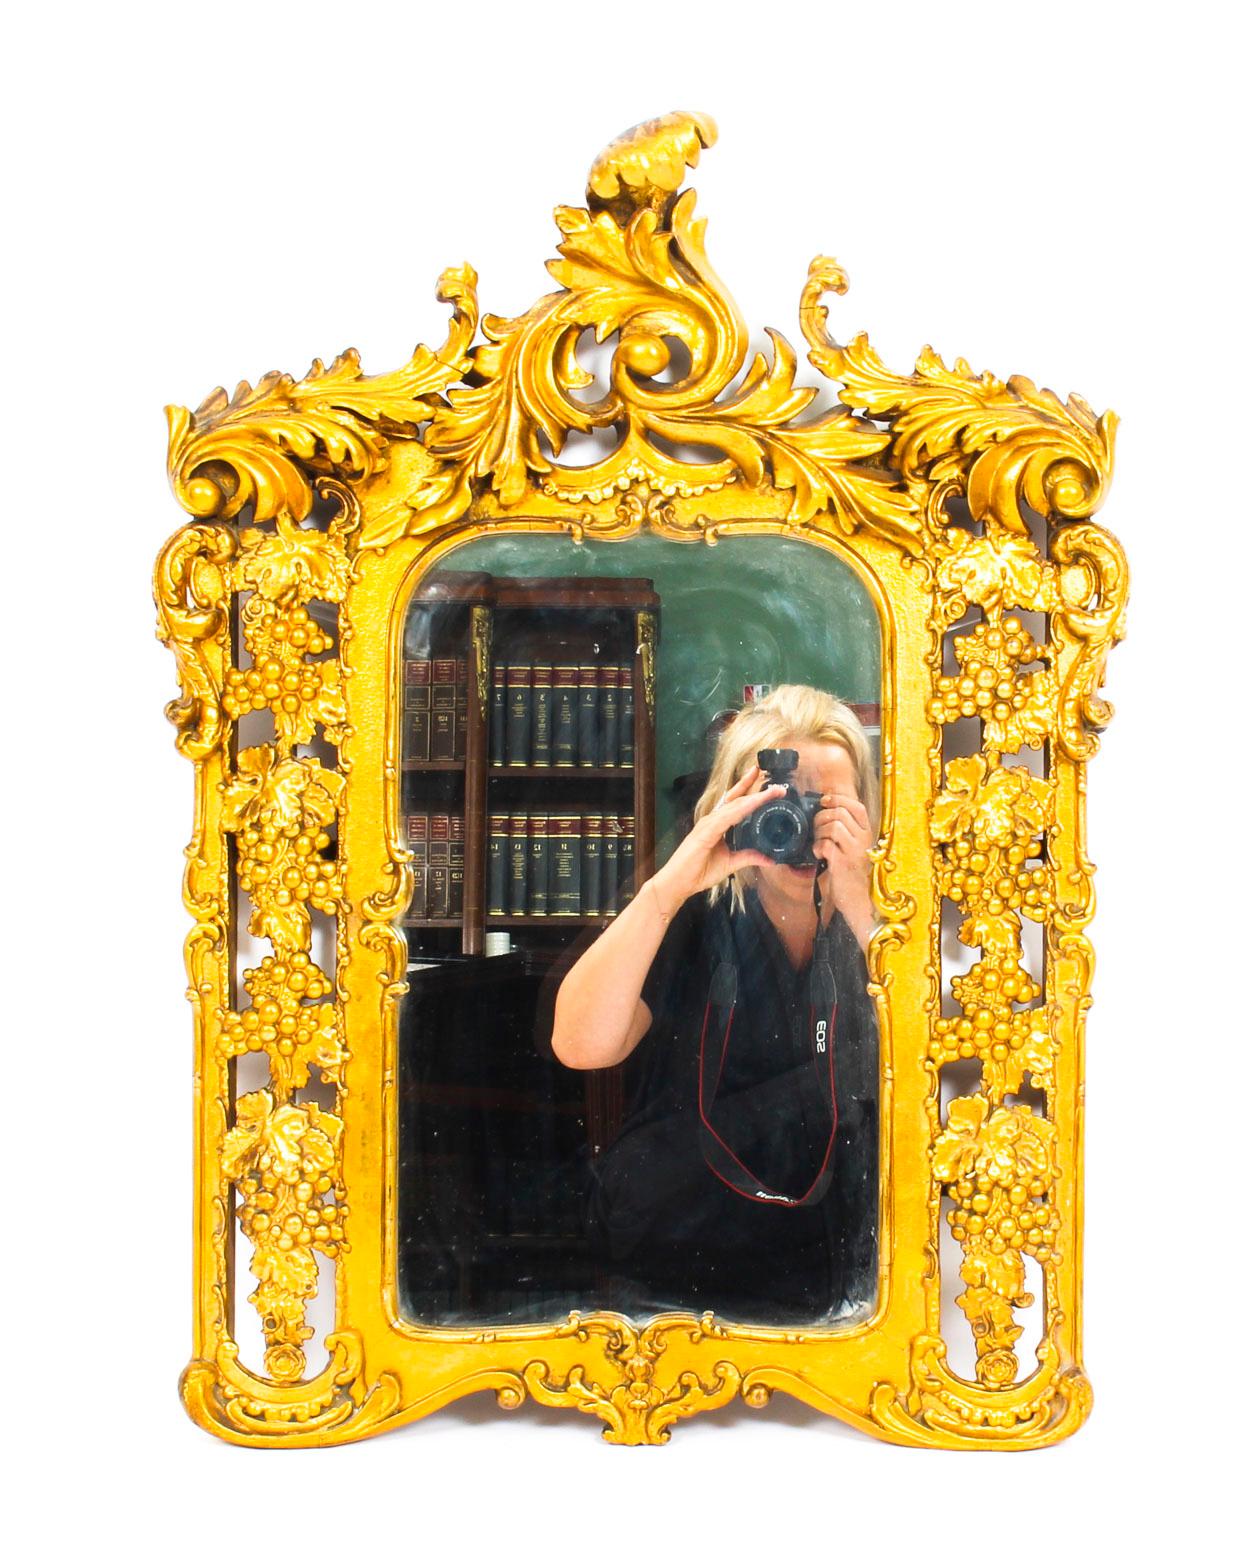 Il s'agit d'un miroir antique italien encadré en bois doré vraiment spectaculaire, datant d'environ 1860. Mesures : 78 x 56cm.
 
La plaque de miroir rectangulaire biseautée possède un cadre en bois doré superbement sculpté, orné d'une splendide